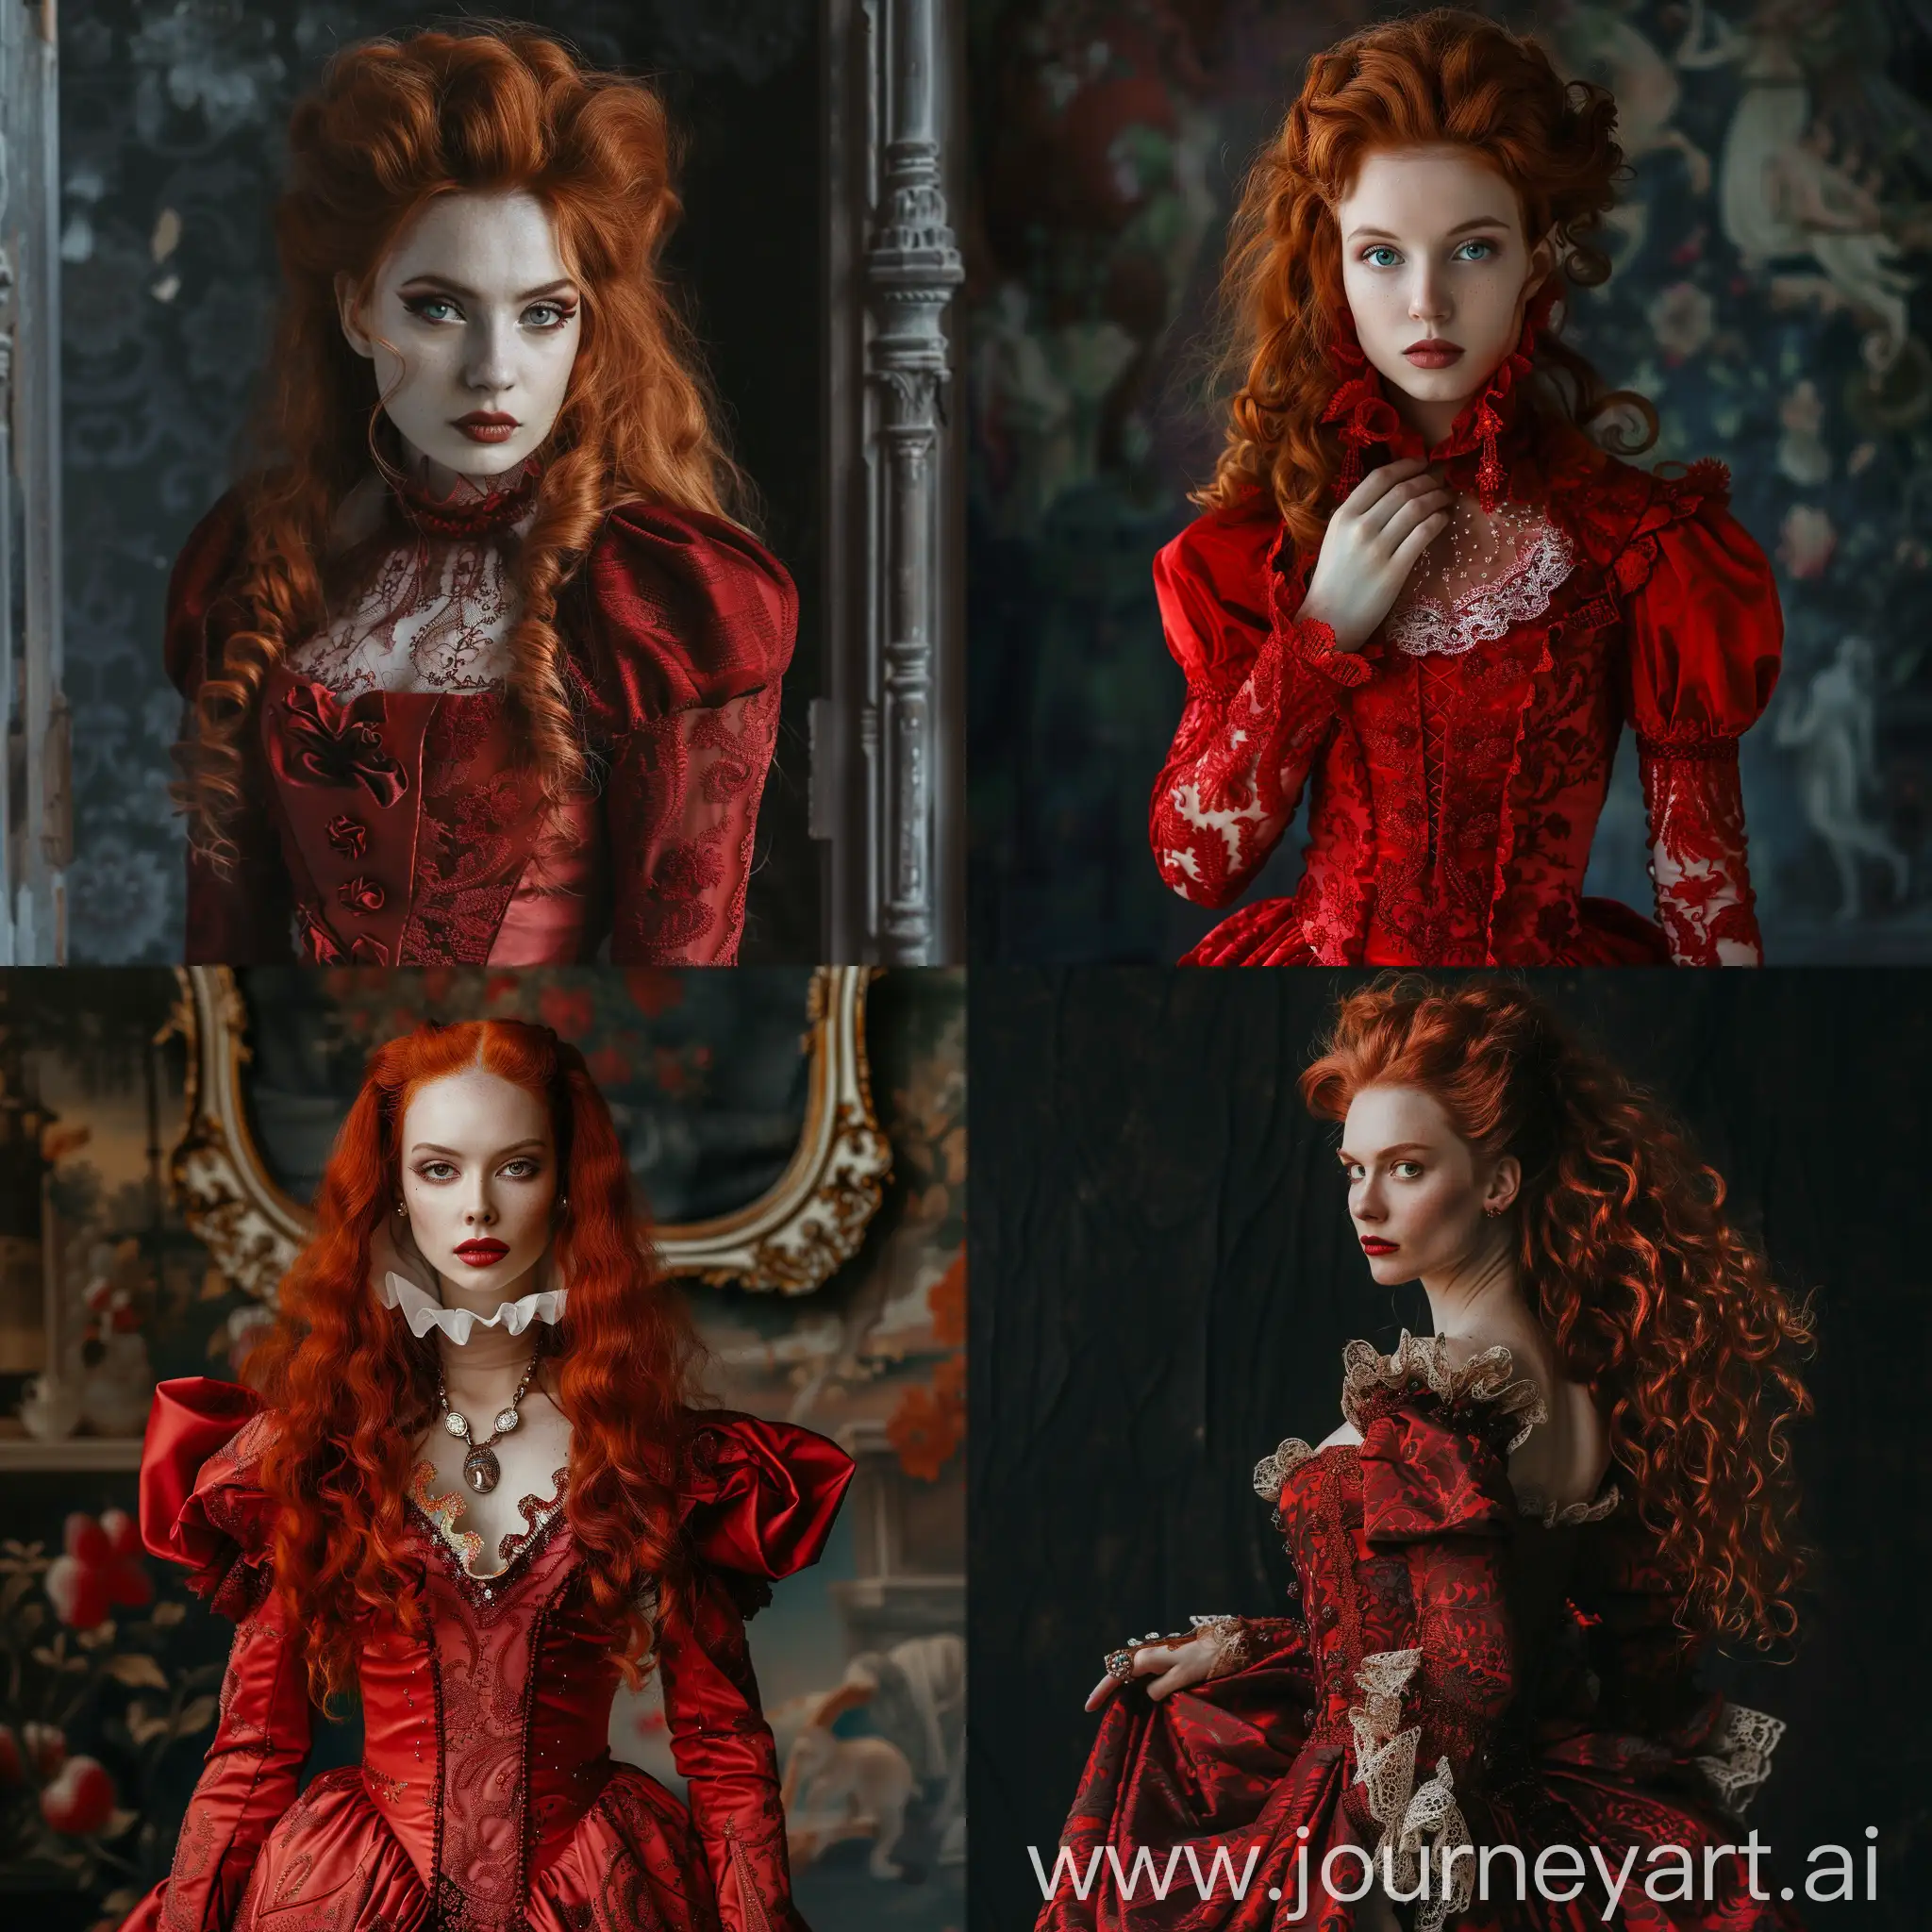 RedHaired-Vampire-in-Opulent-Baroque-Dress